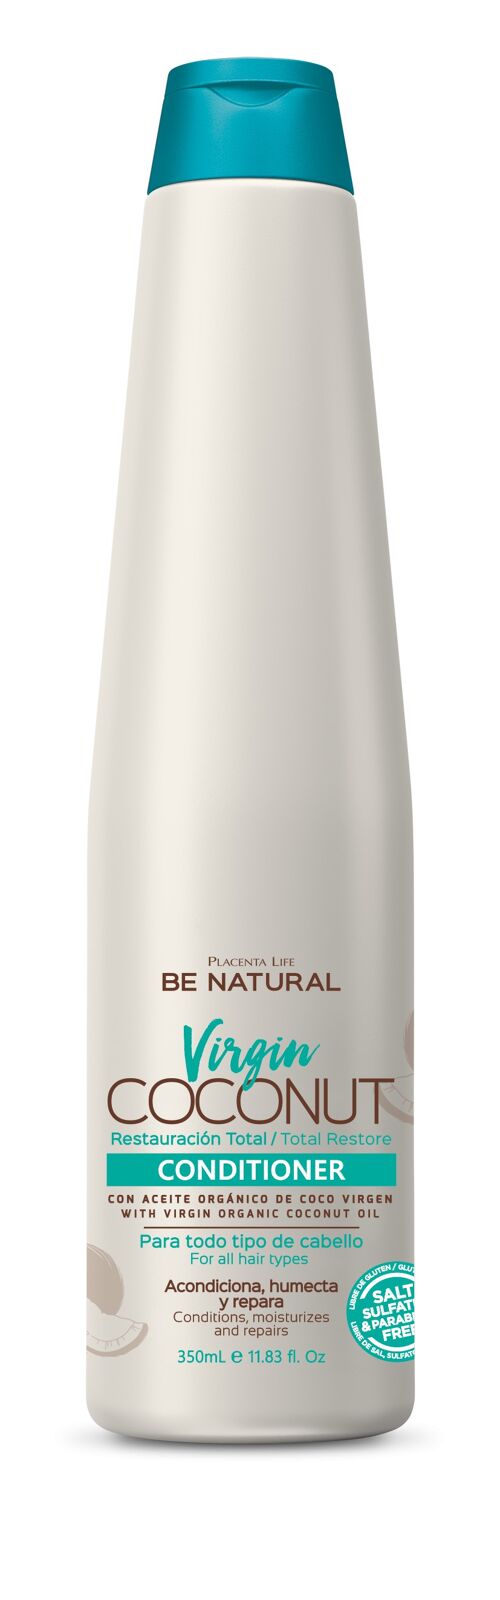 Virgin Coconut. Acondicionador con Aceite de Coco. Restauración total. Hidrata y regenera tu cabello. Contenido 350 ml.